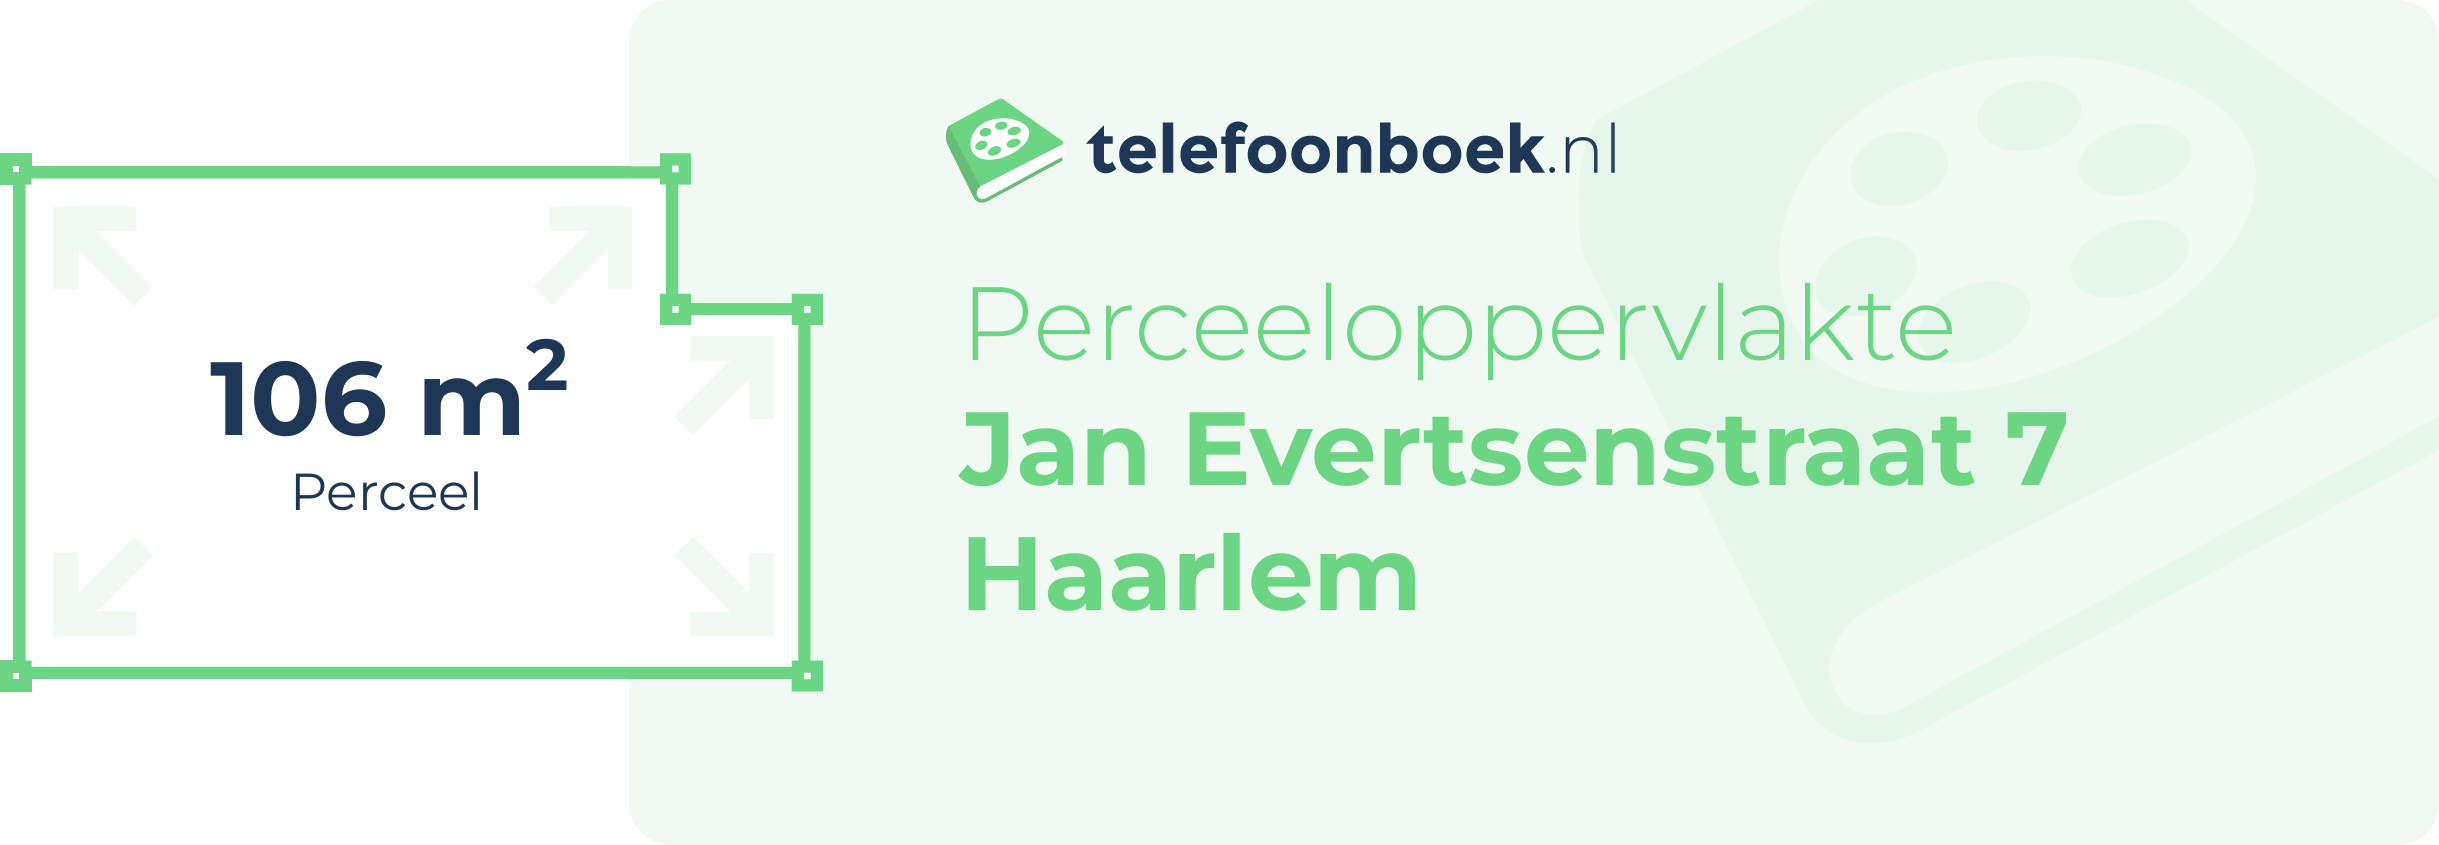 Perceeloppervlakte Jan Evertsenstraat 7 Haarlem